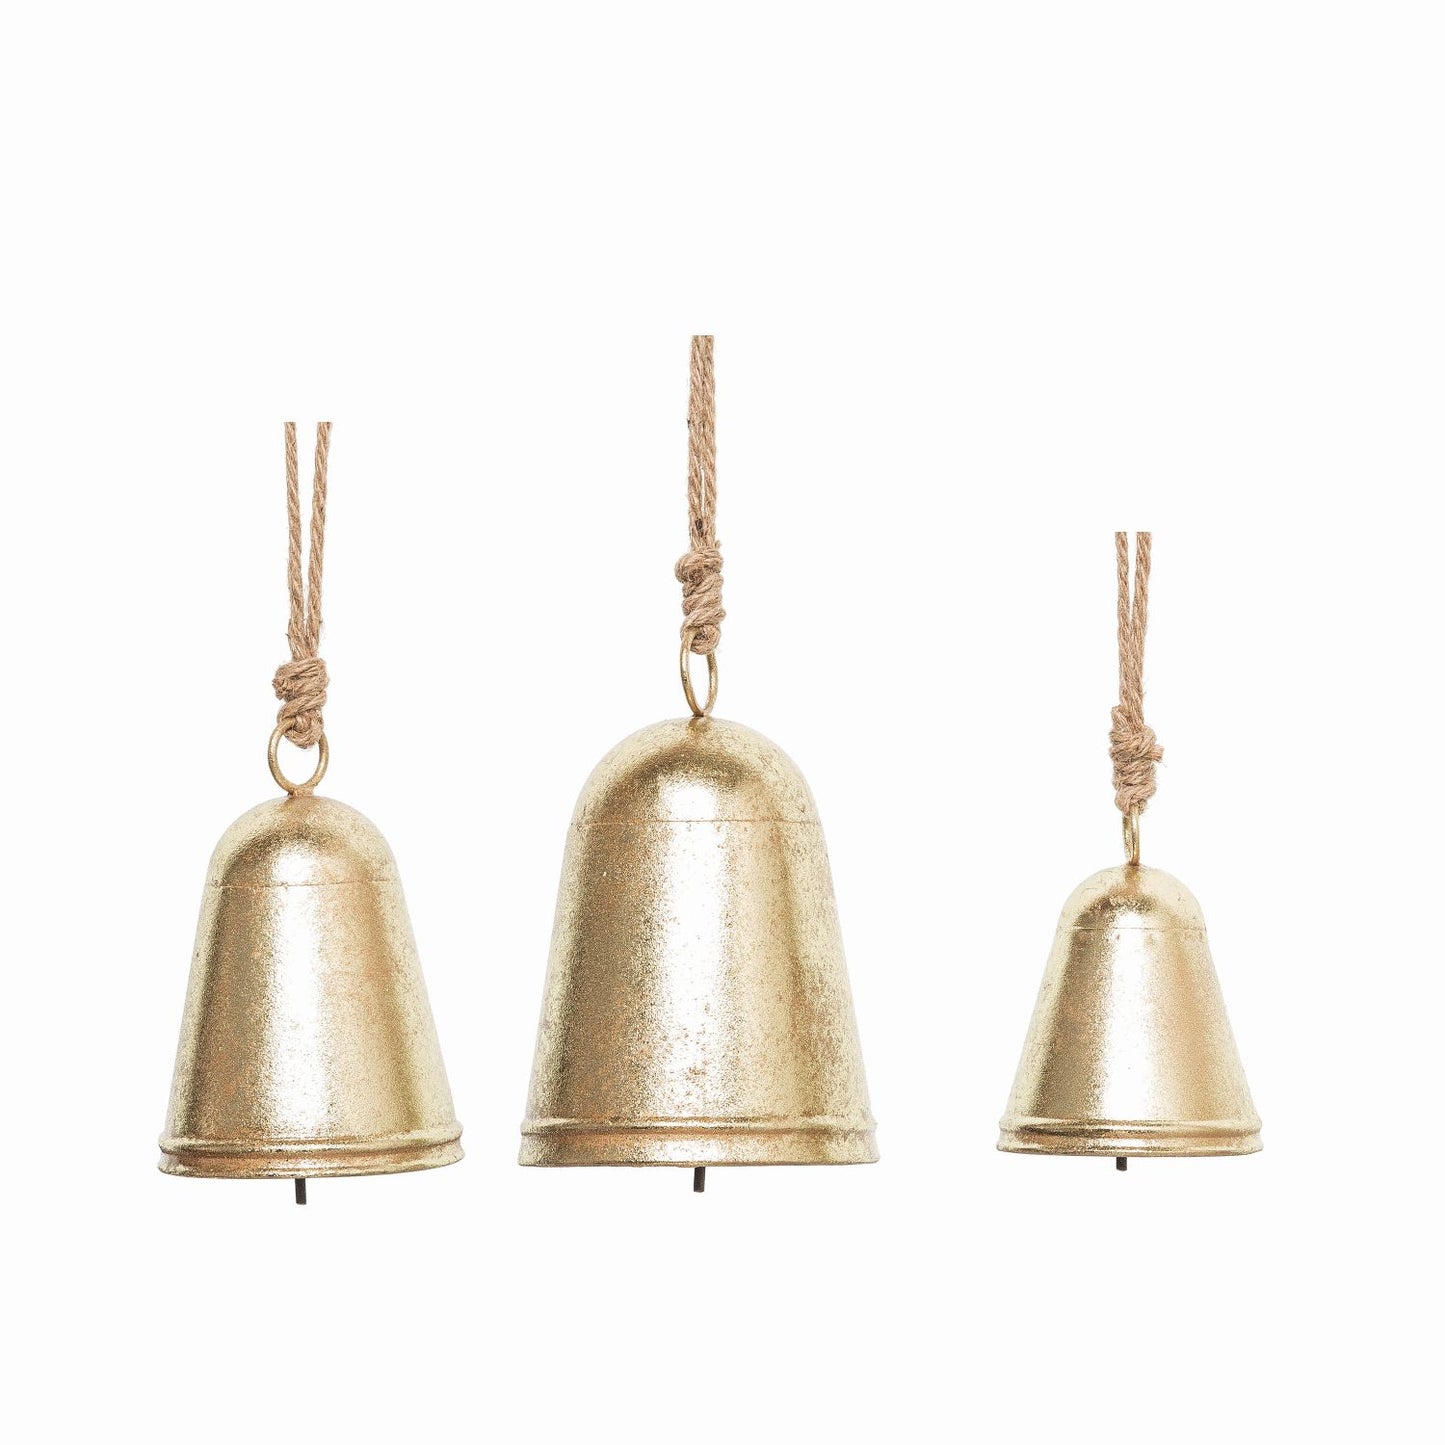 Transpac Metal Hanging Bells Decor, Set Of 3